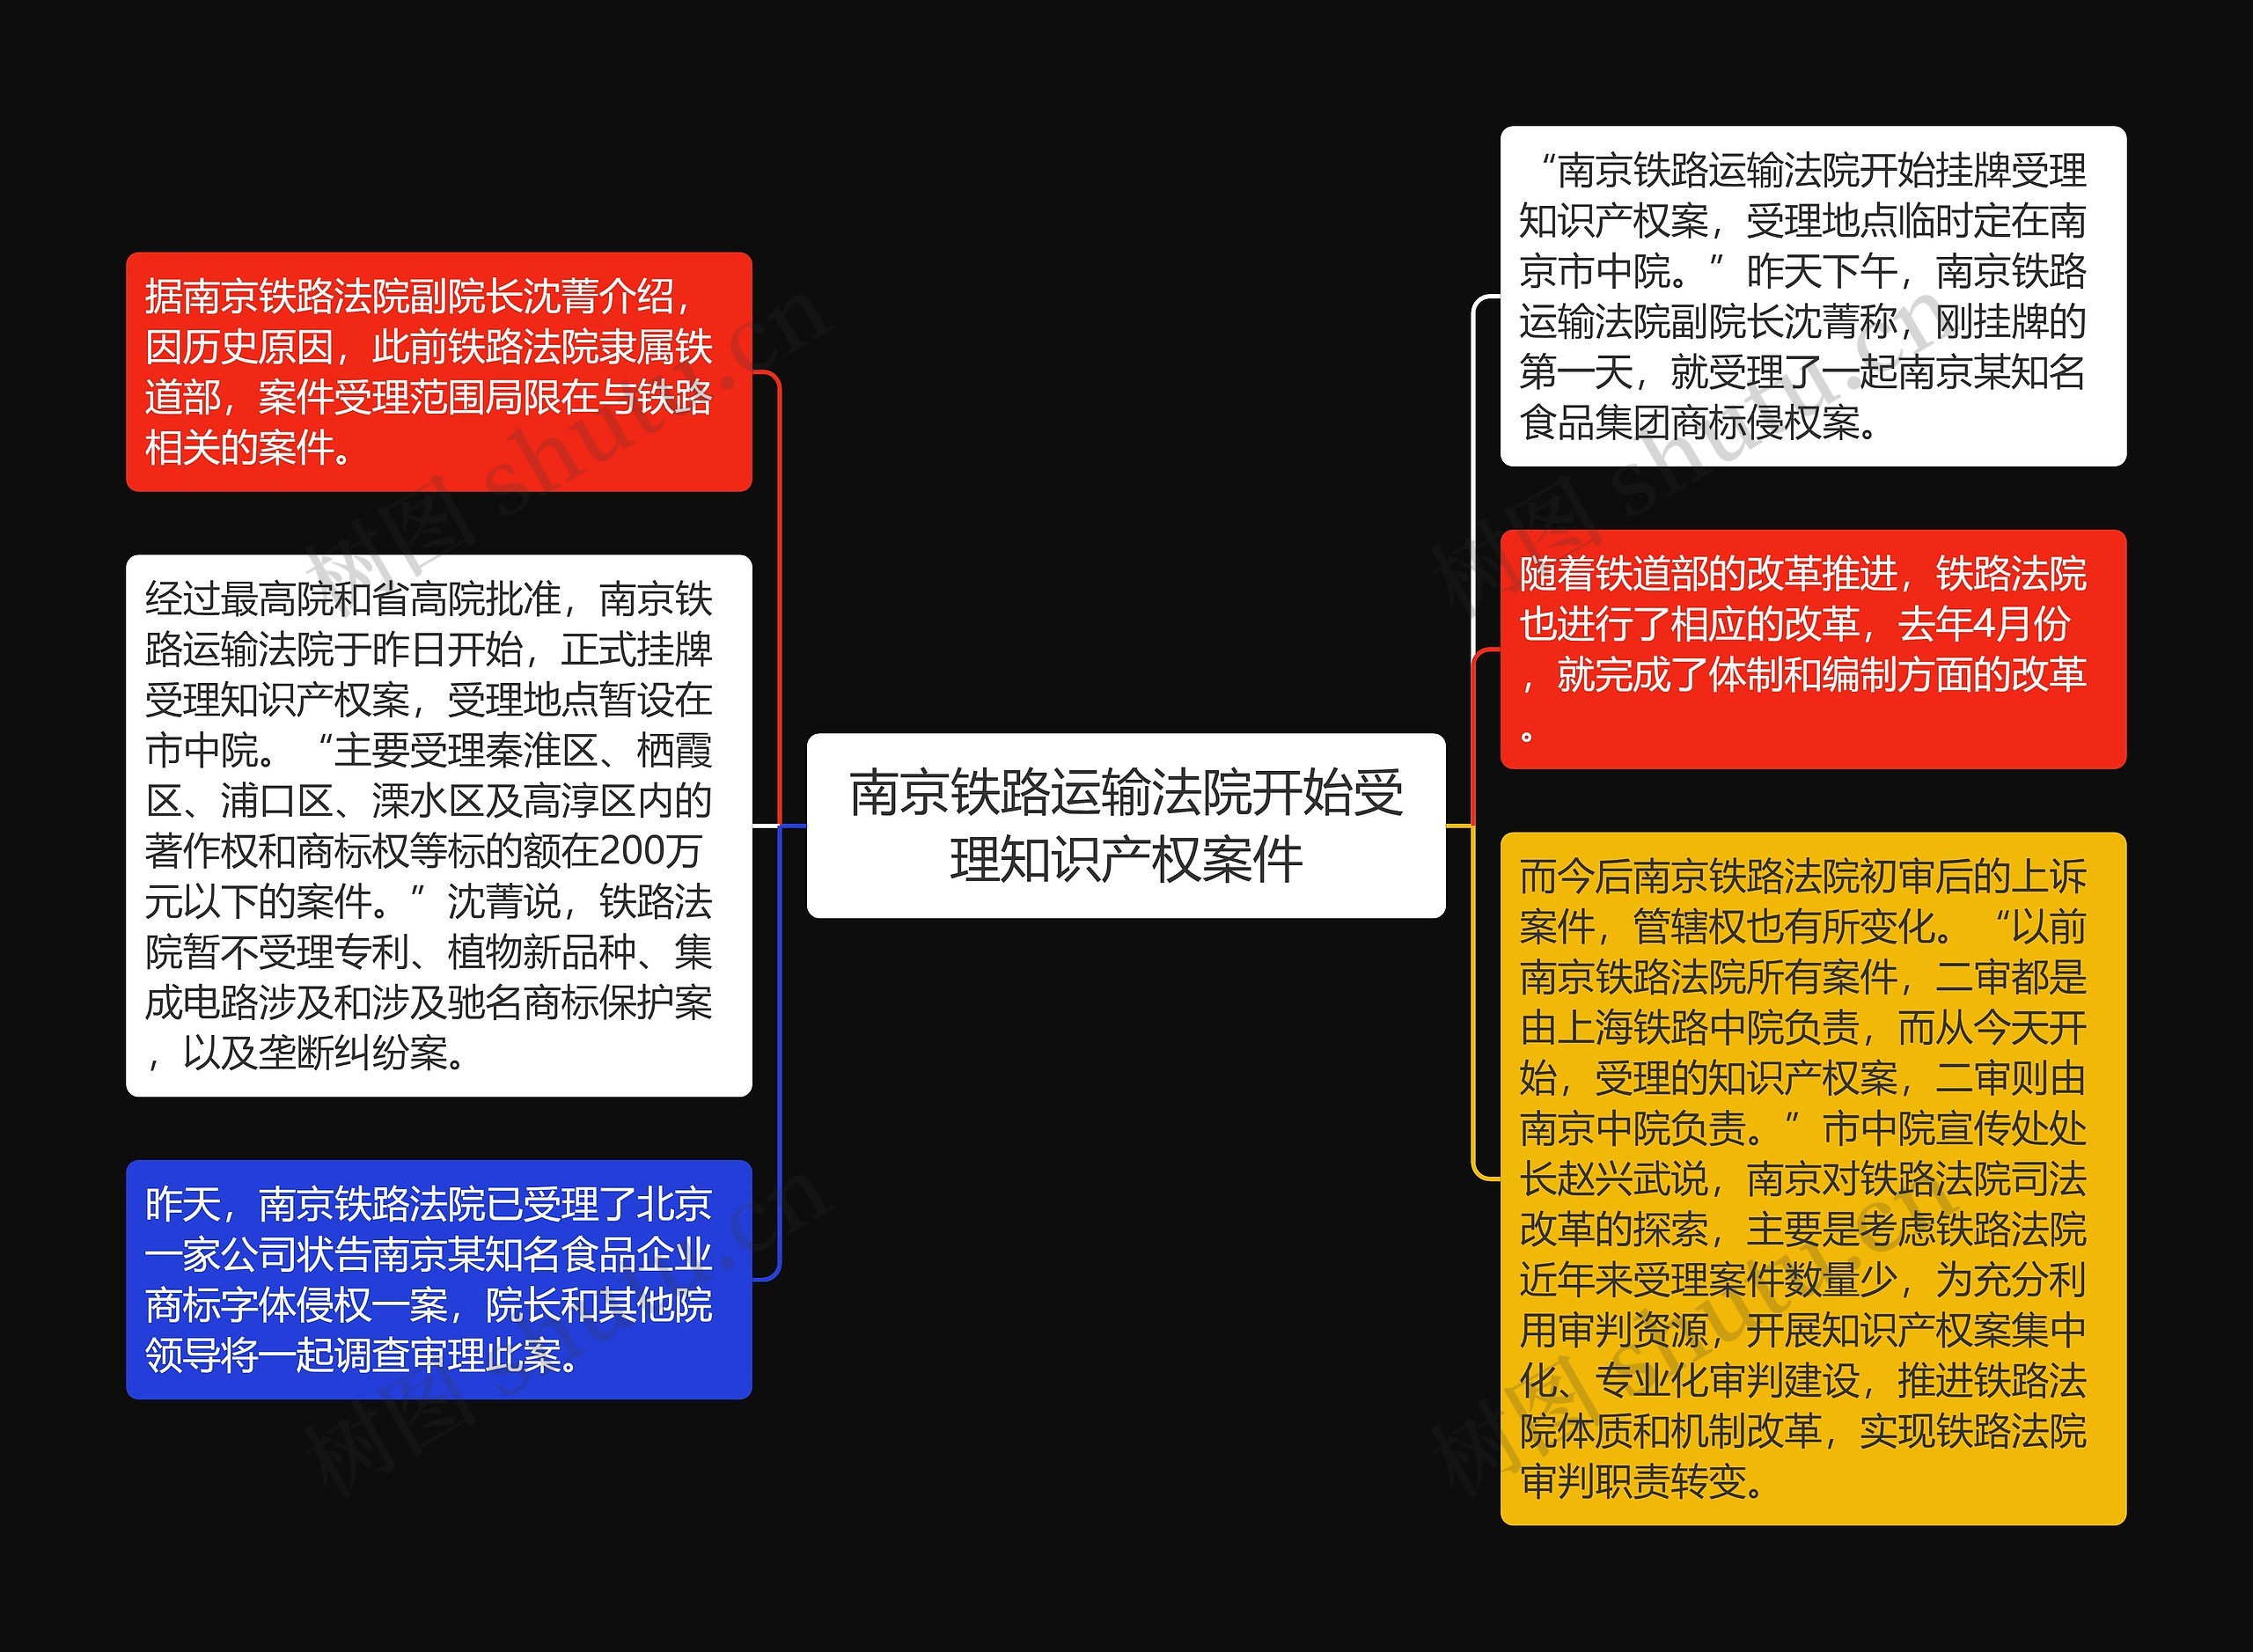 南京铁路运输法院开始受理知识产权案件思维导图